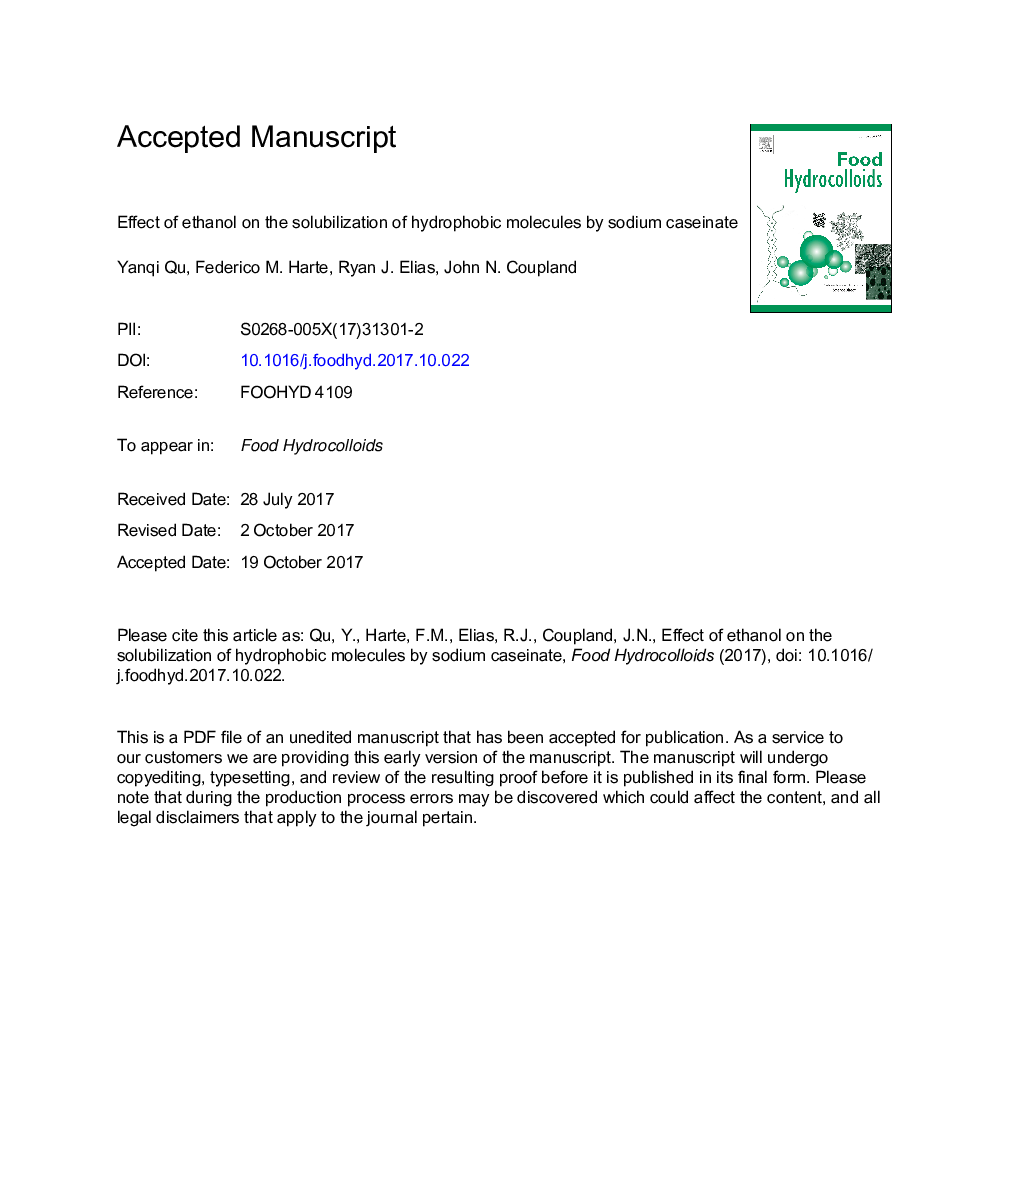 اثر اتانول بر حلالیت مولکول های هیدروفوب توسط کائزانات سدیم 